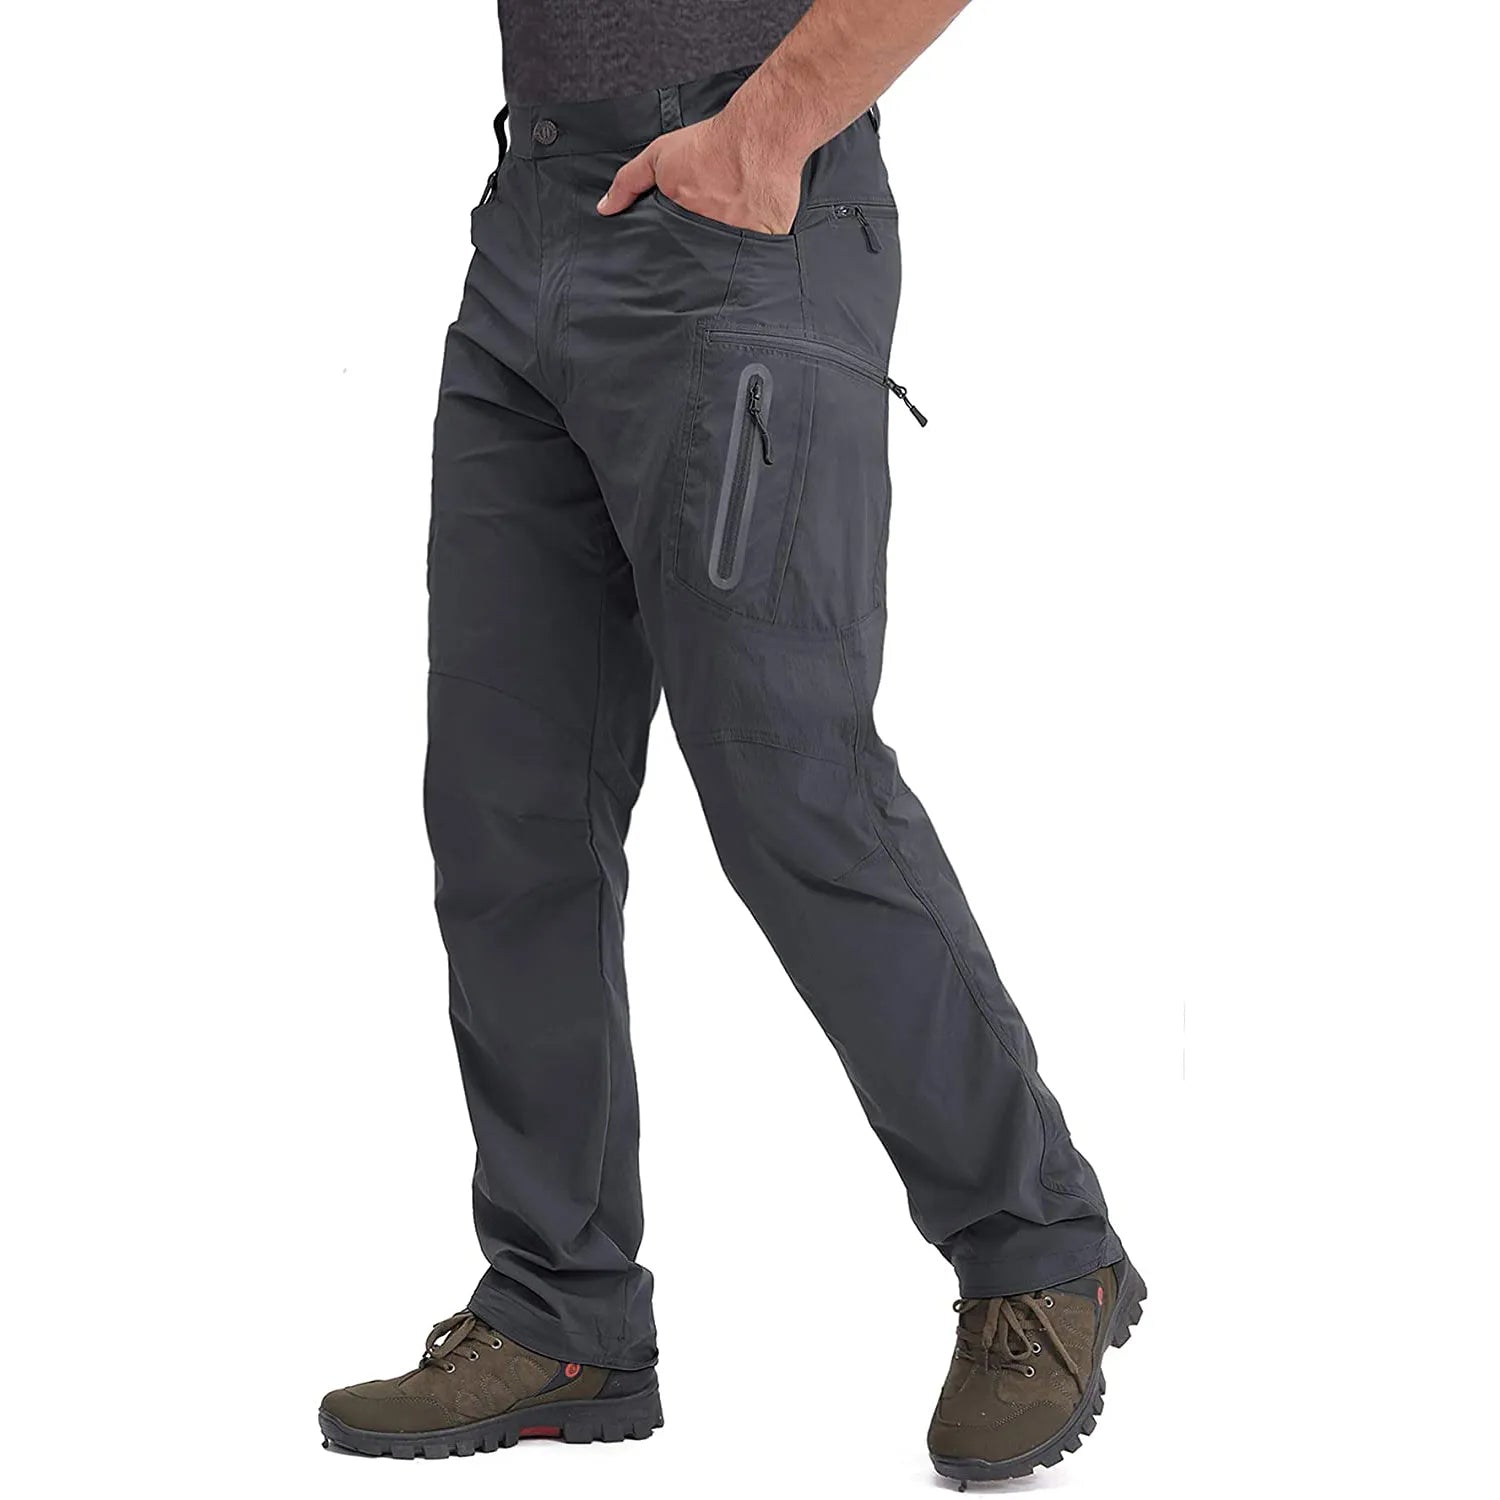 Buy Water Resistant Hiking Pants Dark Grey / 30 Australia